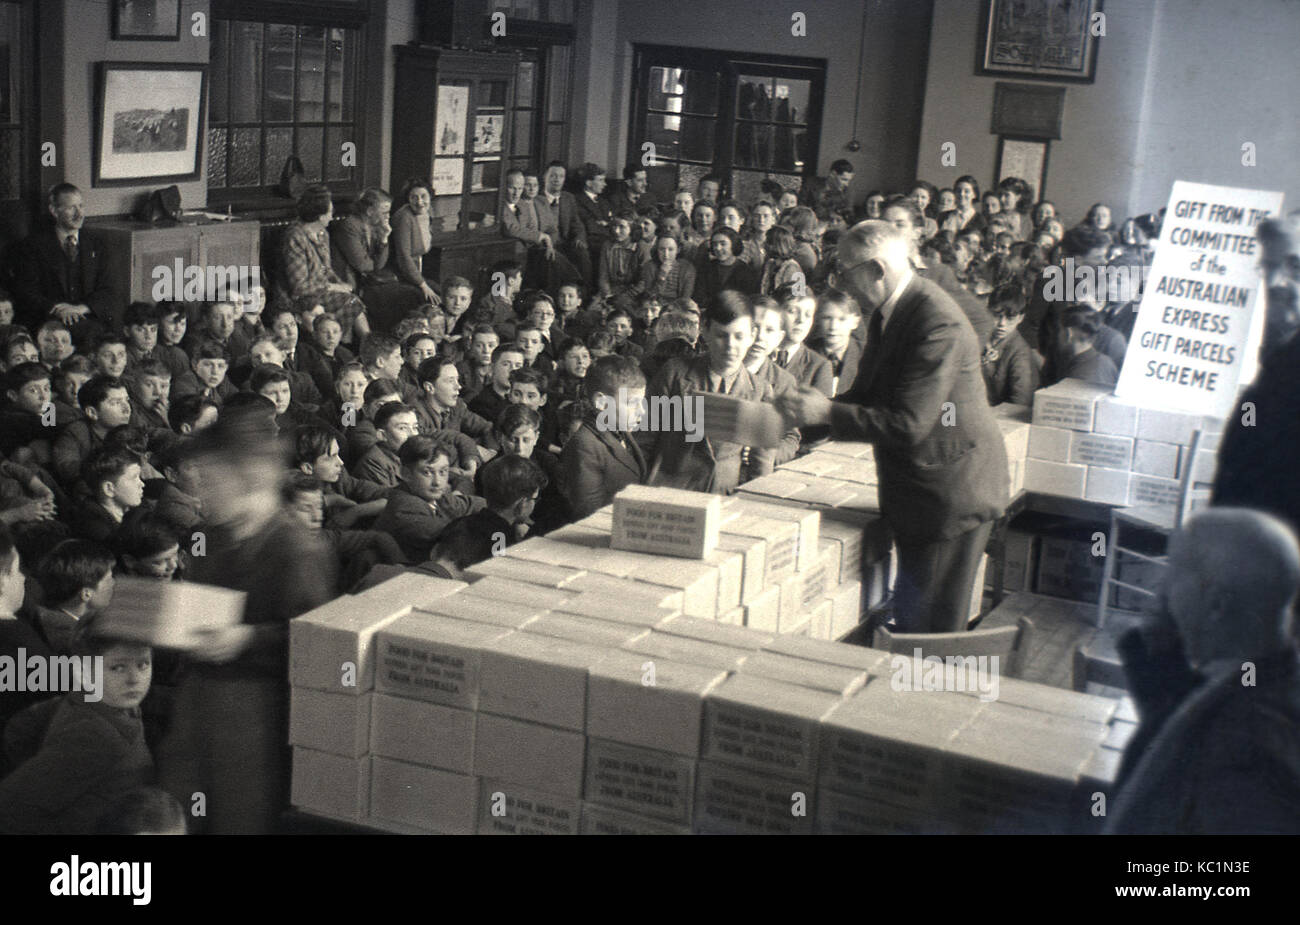 1948, post-ww2 Großbritannien mit Lebensmitteln Rationierung, historische Bild, "Nahrung für Großbritannien", Englisch Schüler empfangen Pakete von Nahrungsmitteln aus Australien, als Geschenk der Ausschuss der Australischen Express Geschenk Paket. Stockfoto